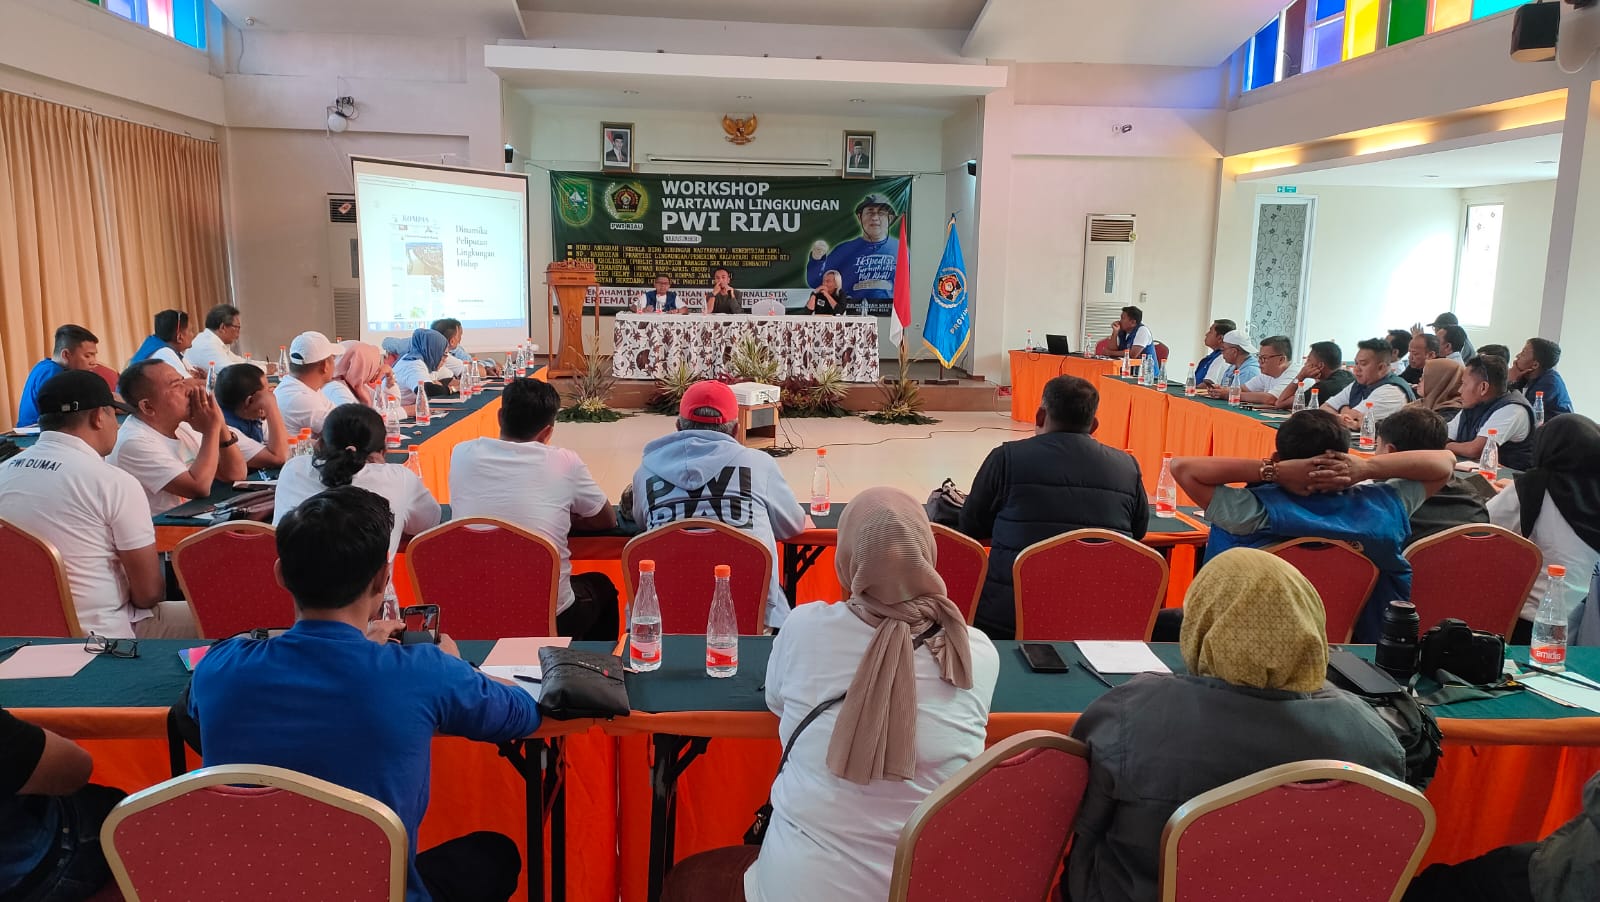 PWI Riau Gelar Workshop Wartawan Lingkungan di Jawa Barat